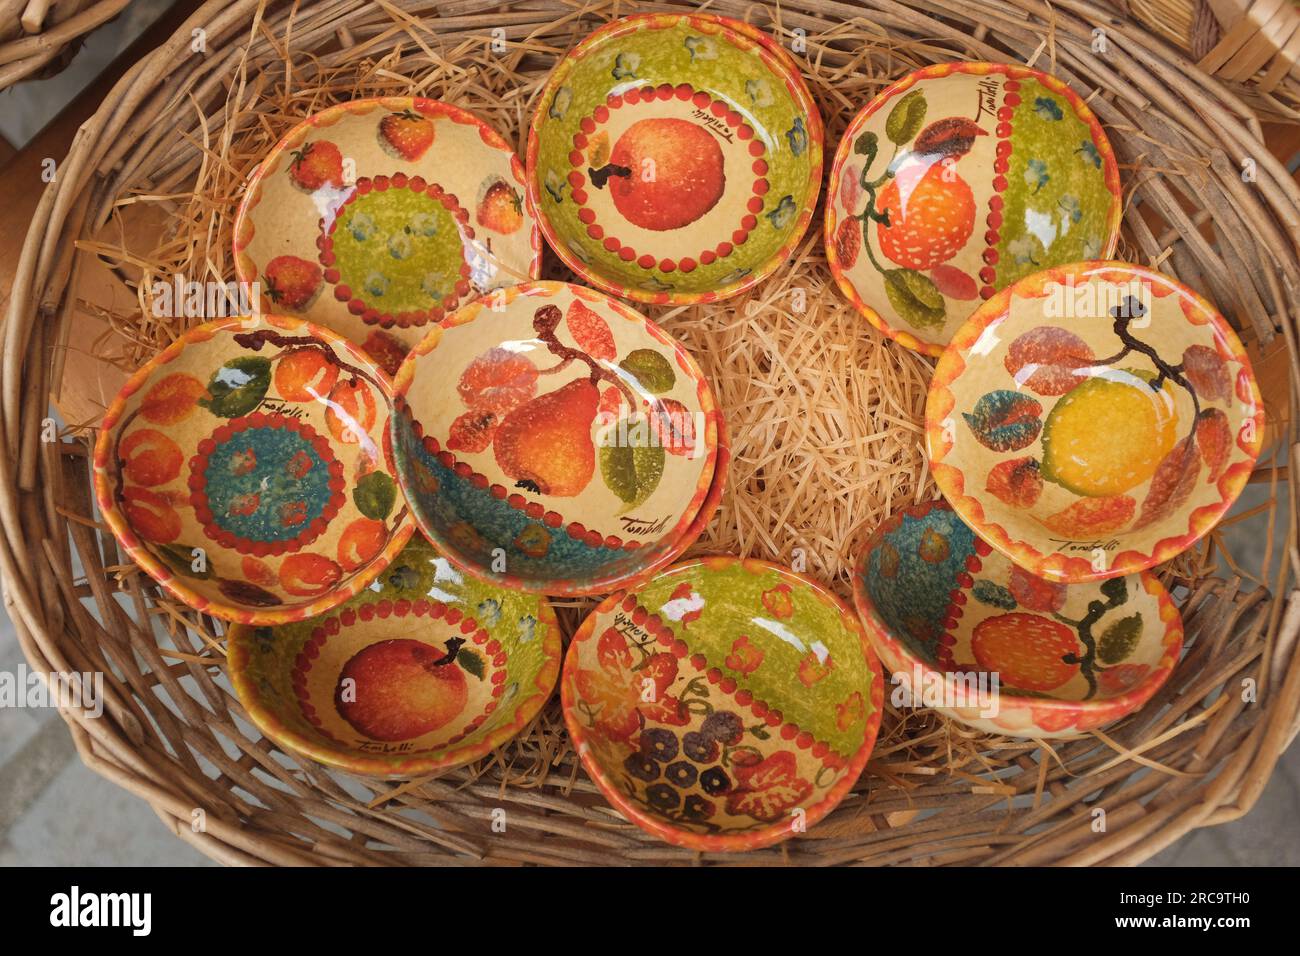 Cinque Terre, Italia - colorate ciotole in ceramica fruttata esposte su un cestino. Souvenir locali venduti a Riomaggiore, una cittadina di mare sulla Riviera Italiana. Foto Stock